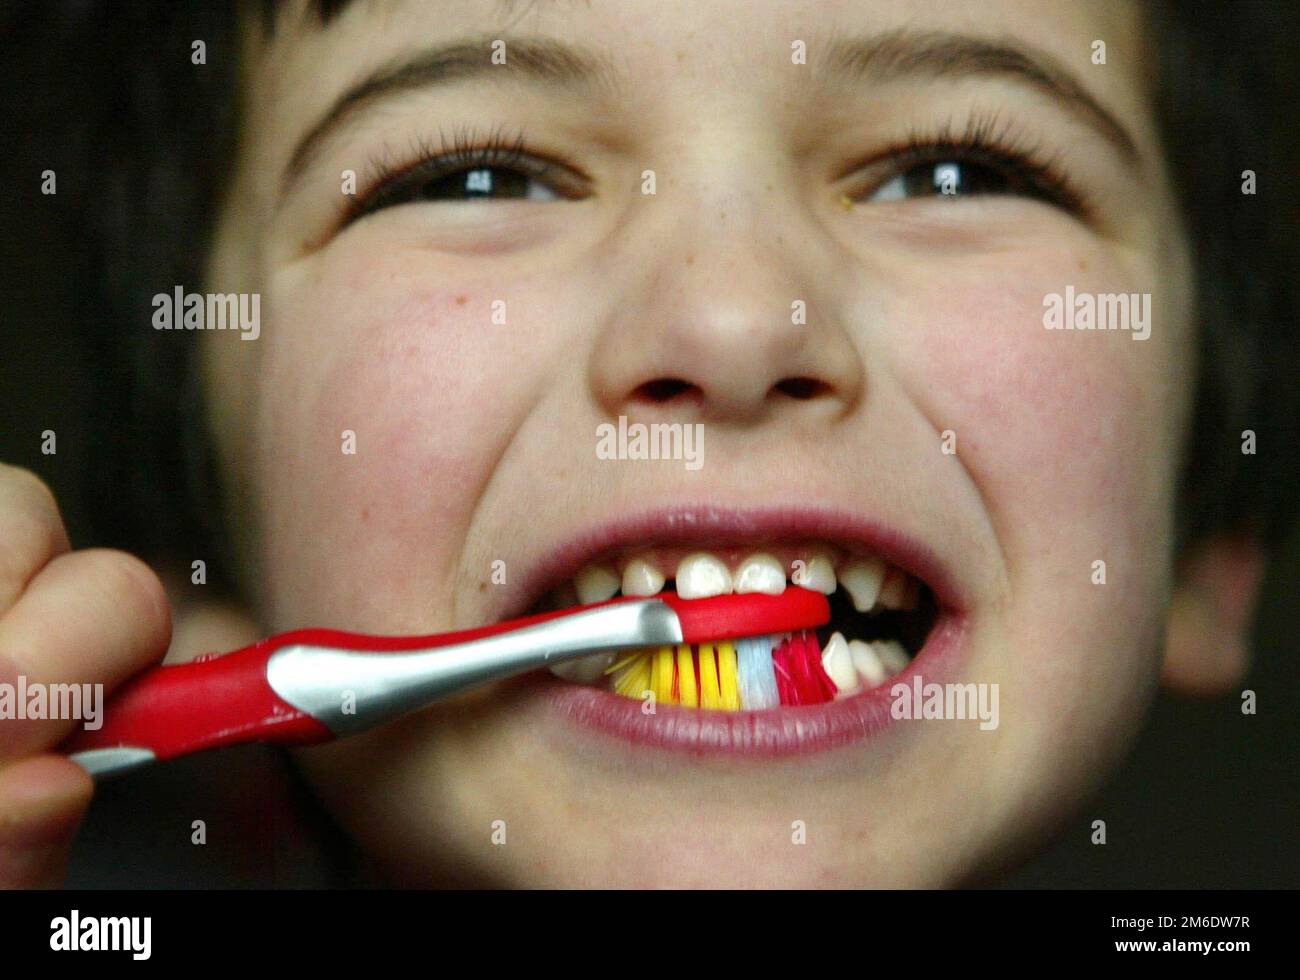 Foto de archivo fechada el 14/02/16 de la foto posada de un niño pequeño  cepillándose los dientes. Los cepillos de dientes se están convirtiendo en  un 'artículo de lujo' para algunas familias,